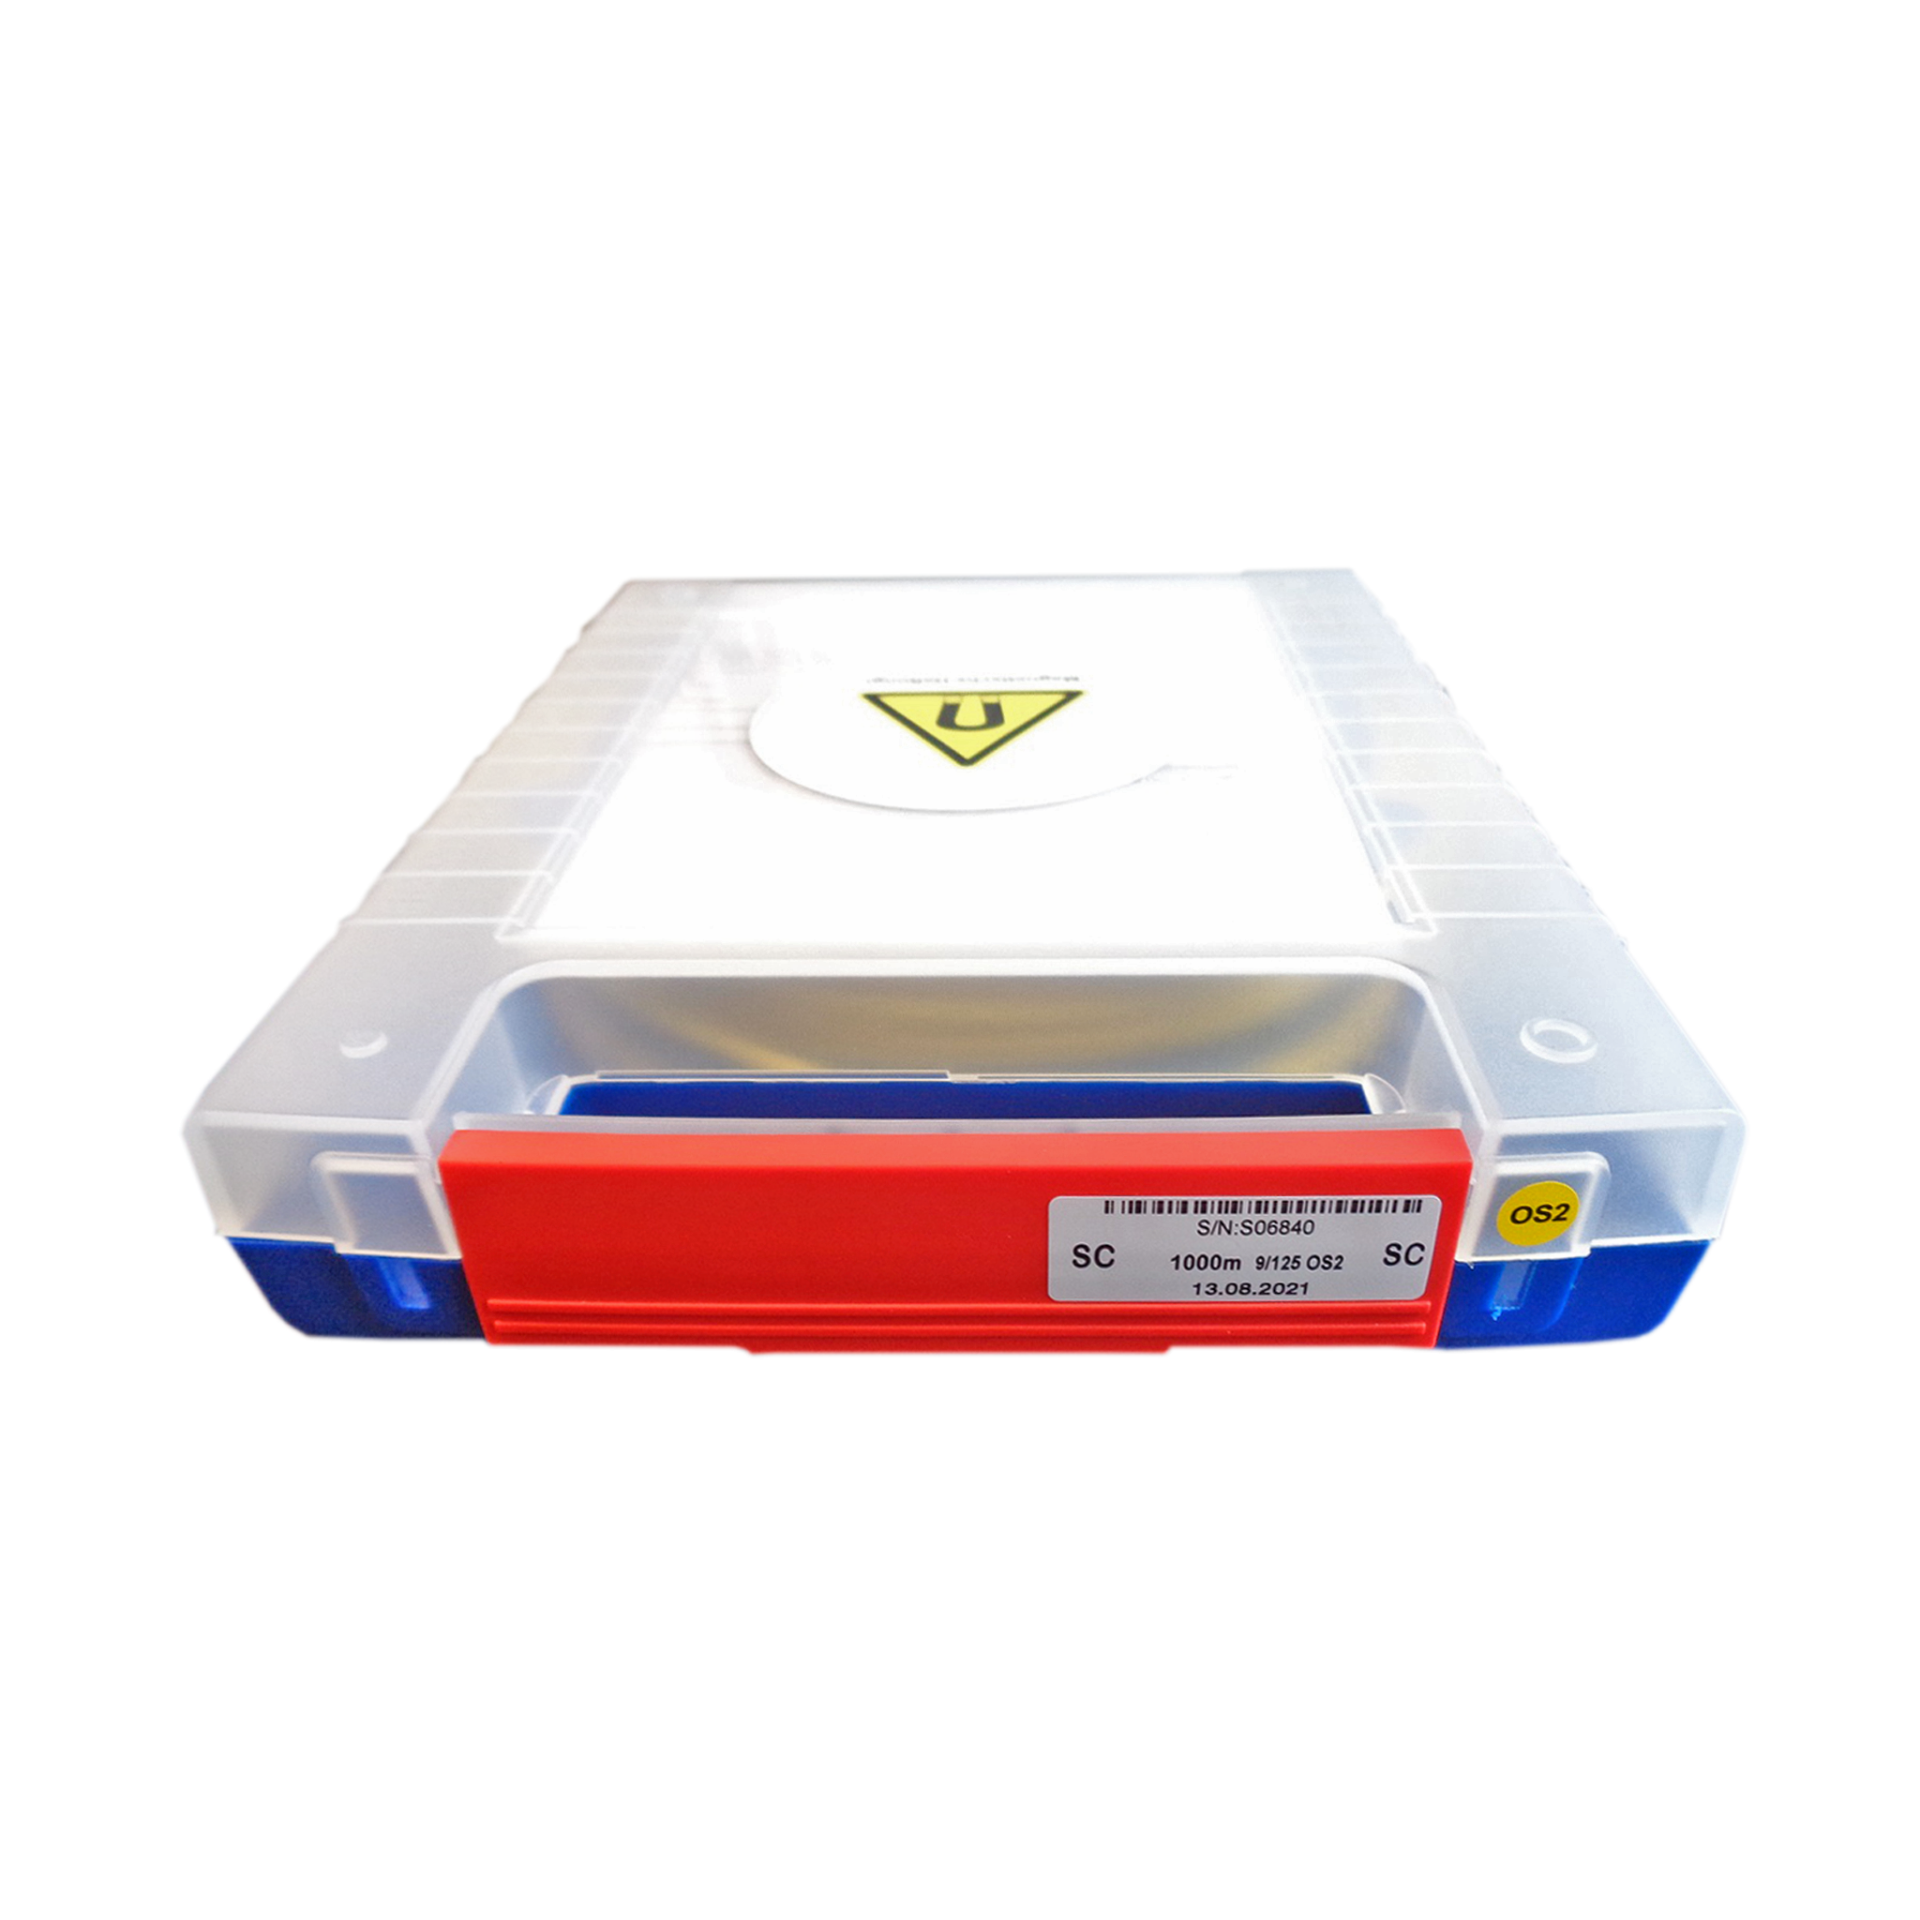 OTDR Vorlauffaser Box OS2 E2000®/APC-SC/APC 500m